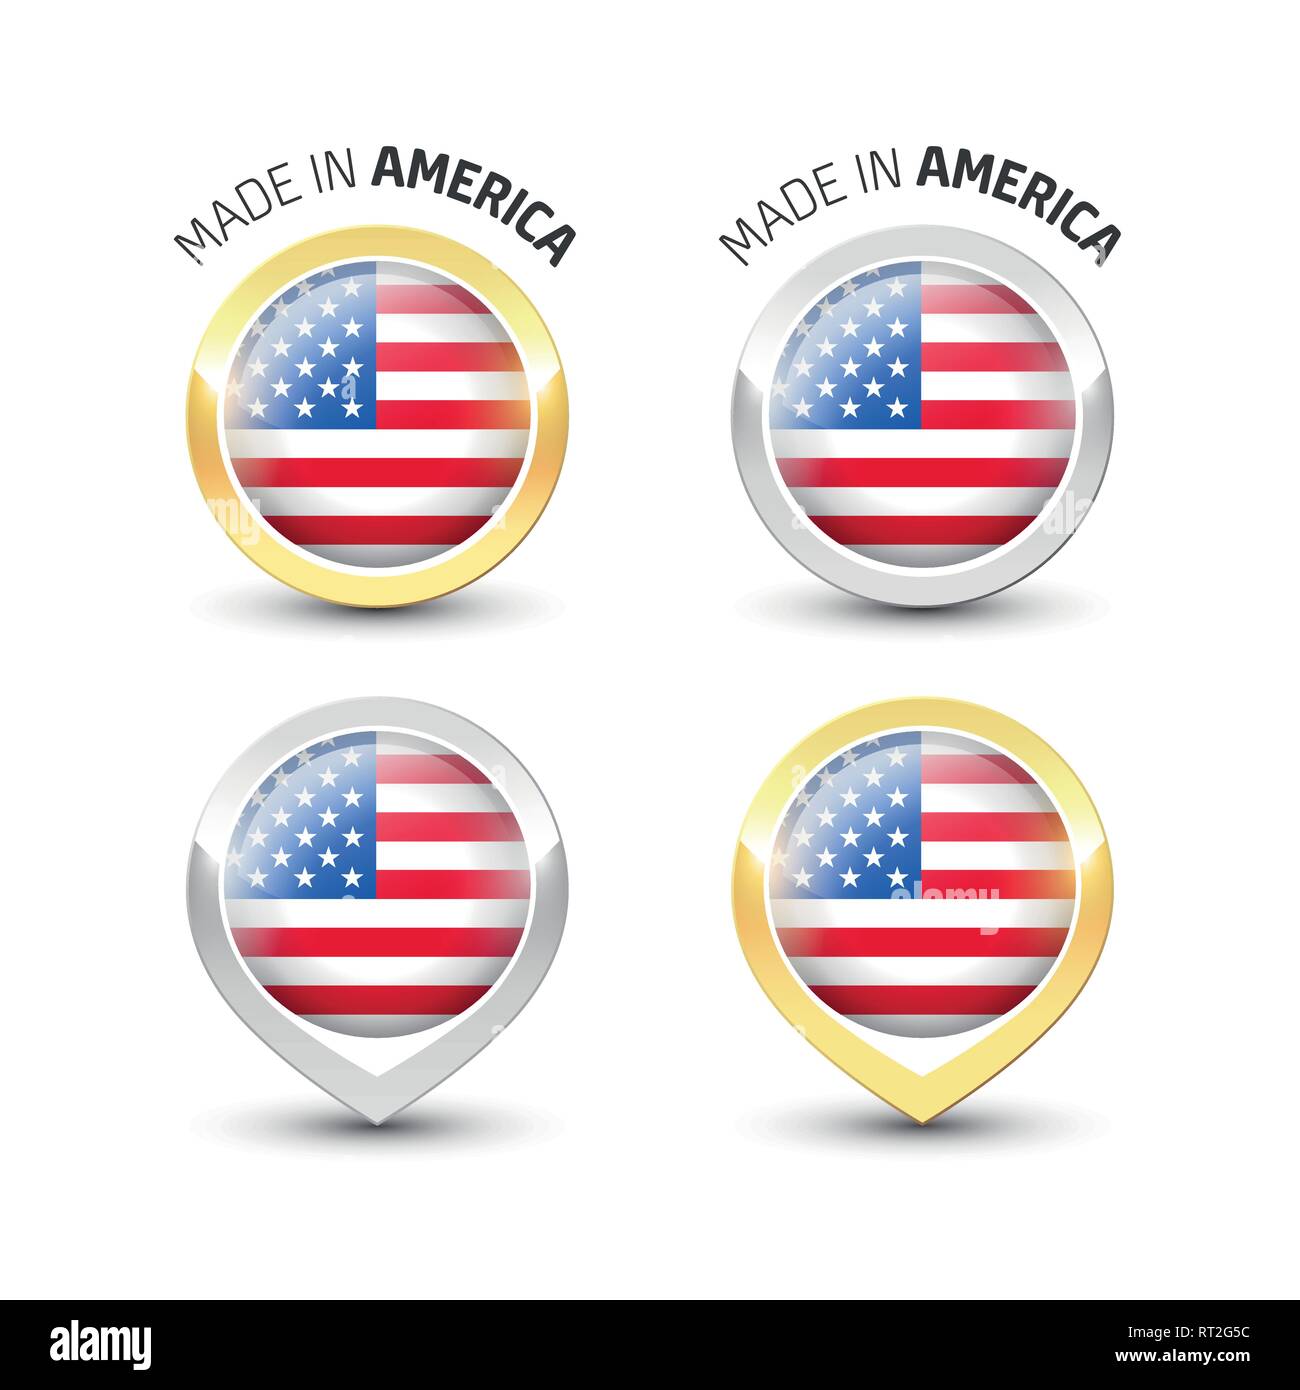 Made in America Stati Uniti d'America - etichetta di garanzia con la bandiera degli Stati Uniti d'America all'interno del turno oro e argento icone. Illustrazione Vettoriale